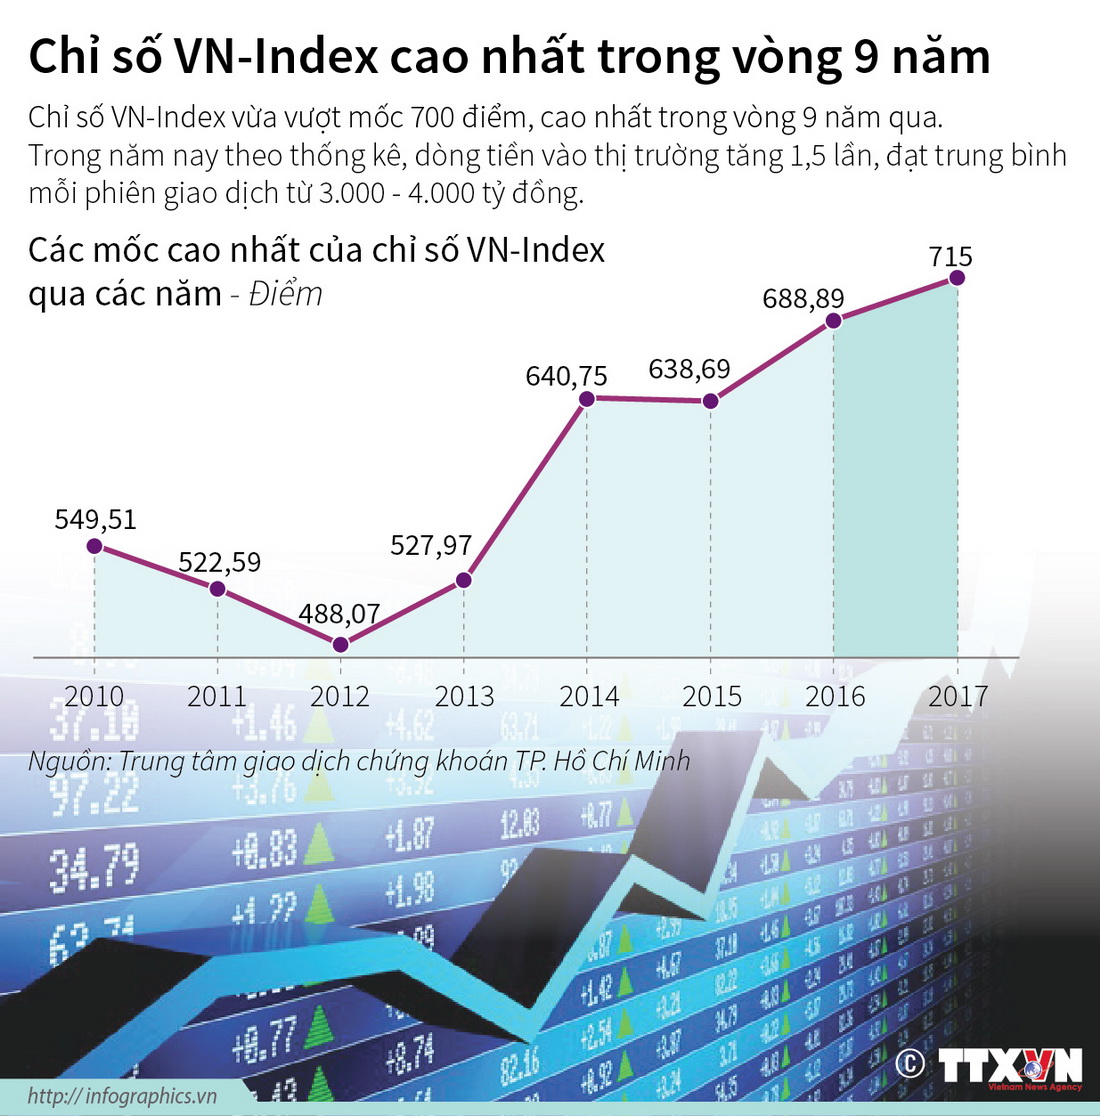 Chỉ số VN-Index lên mốc cao nhất trong vòng 9 năm